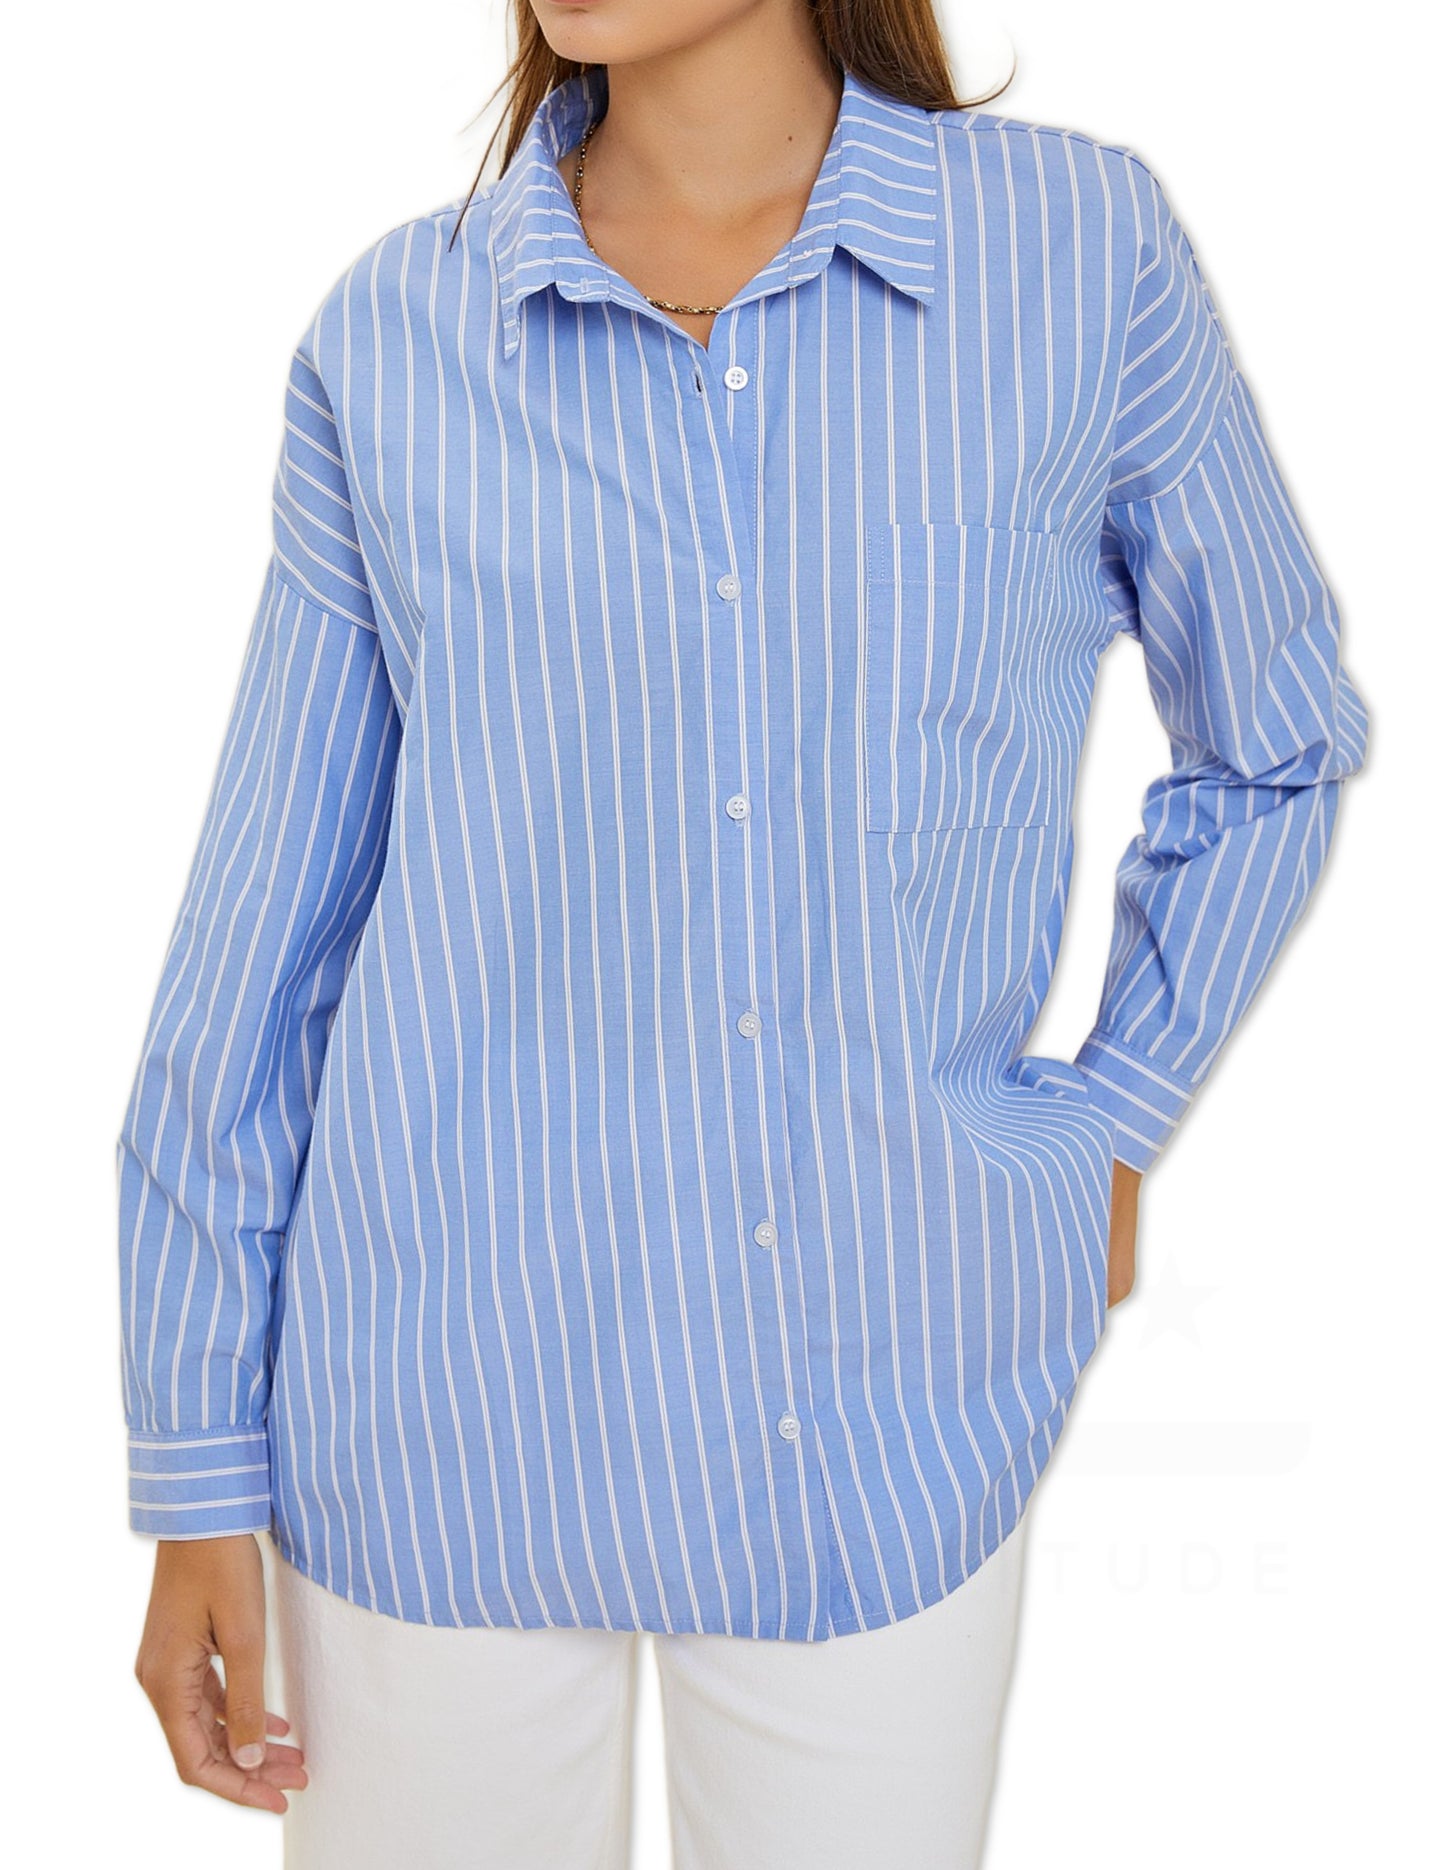 Striped Shirt - Chambray